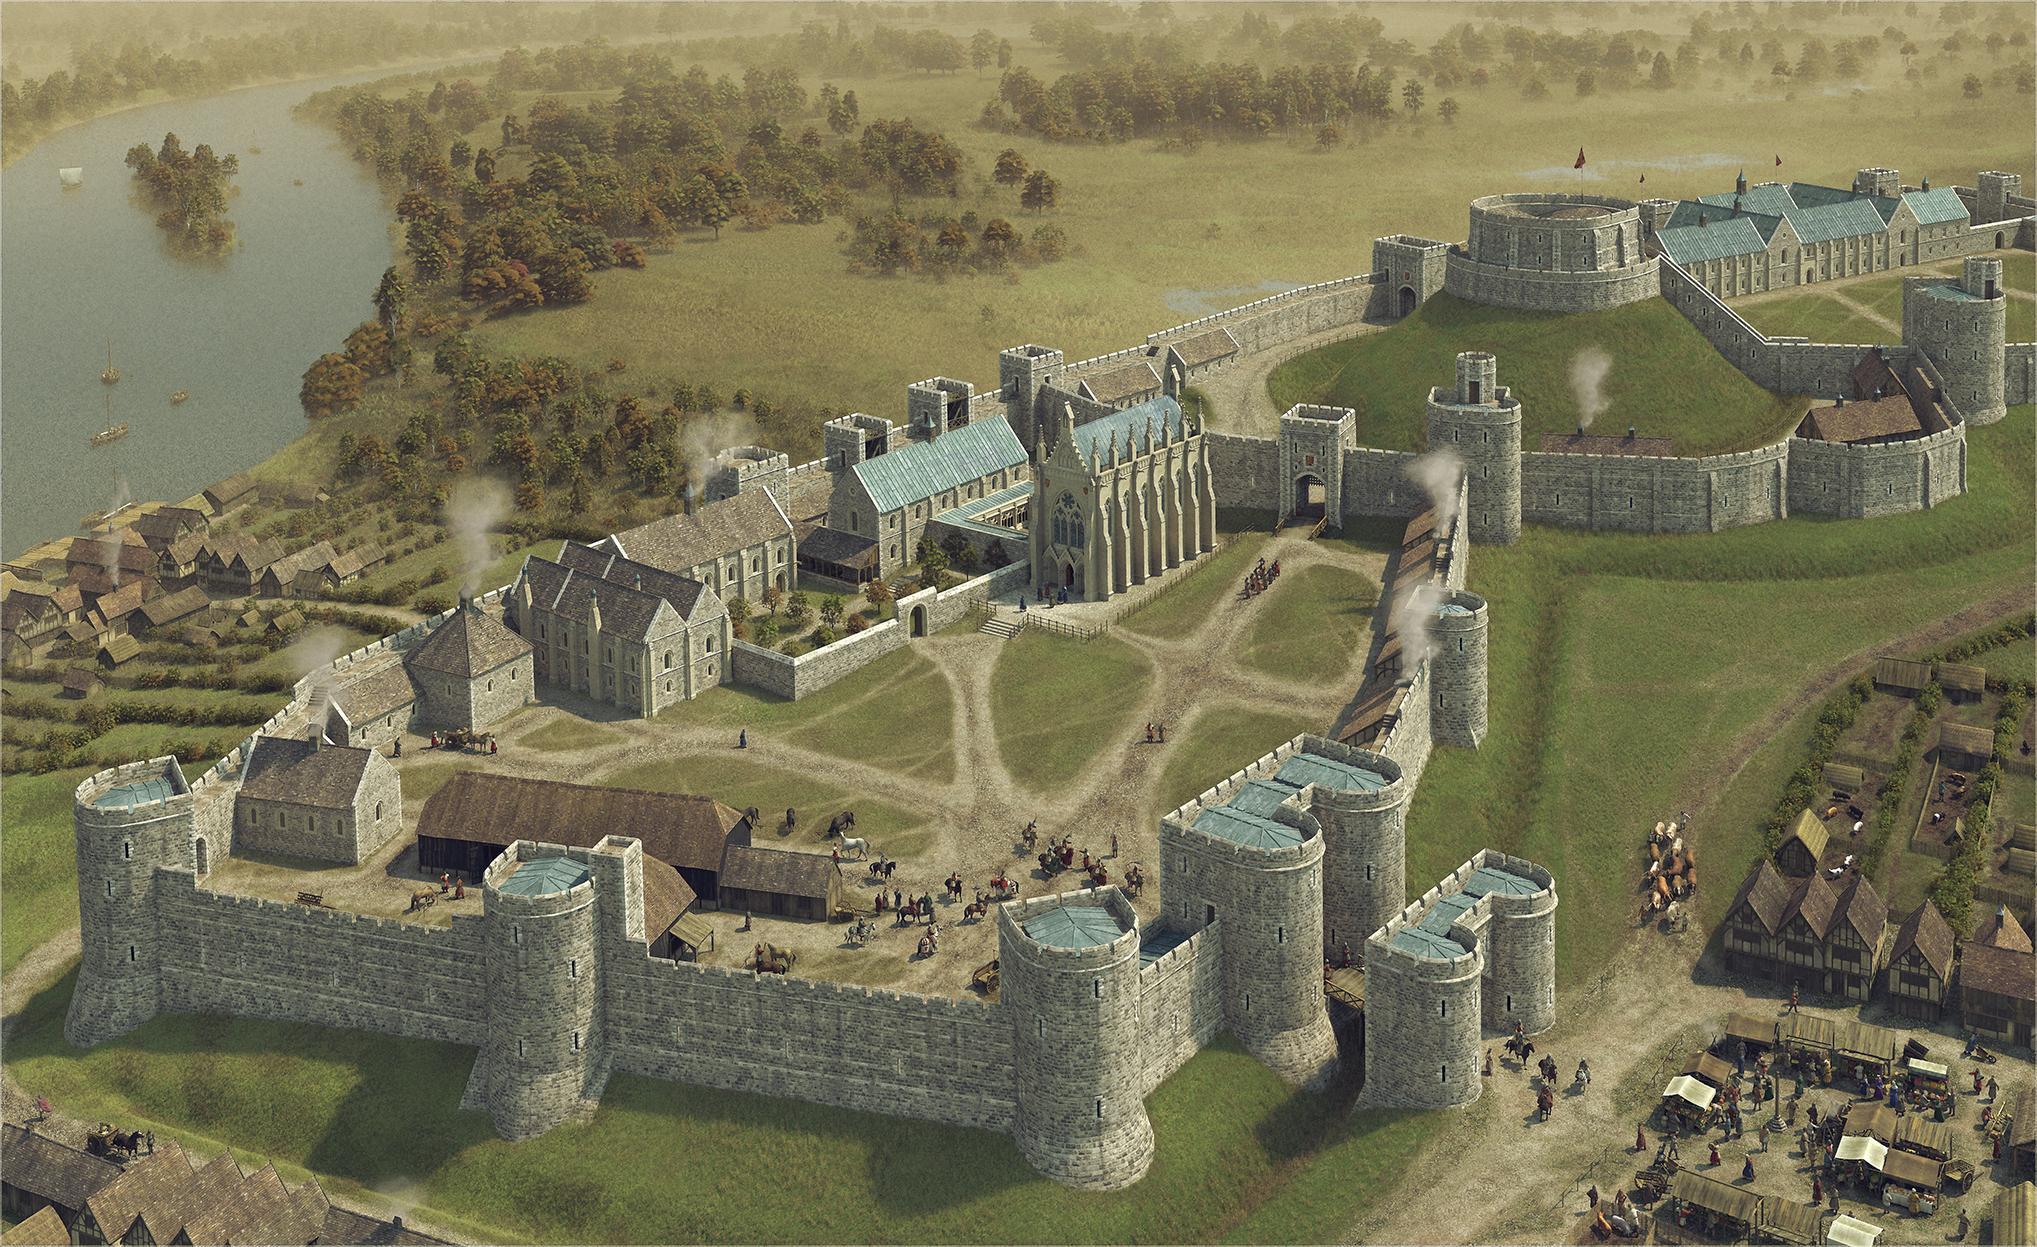 Fascinating Images Show Original Windsor Castle After It Was